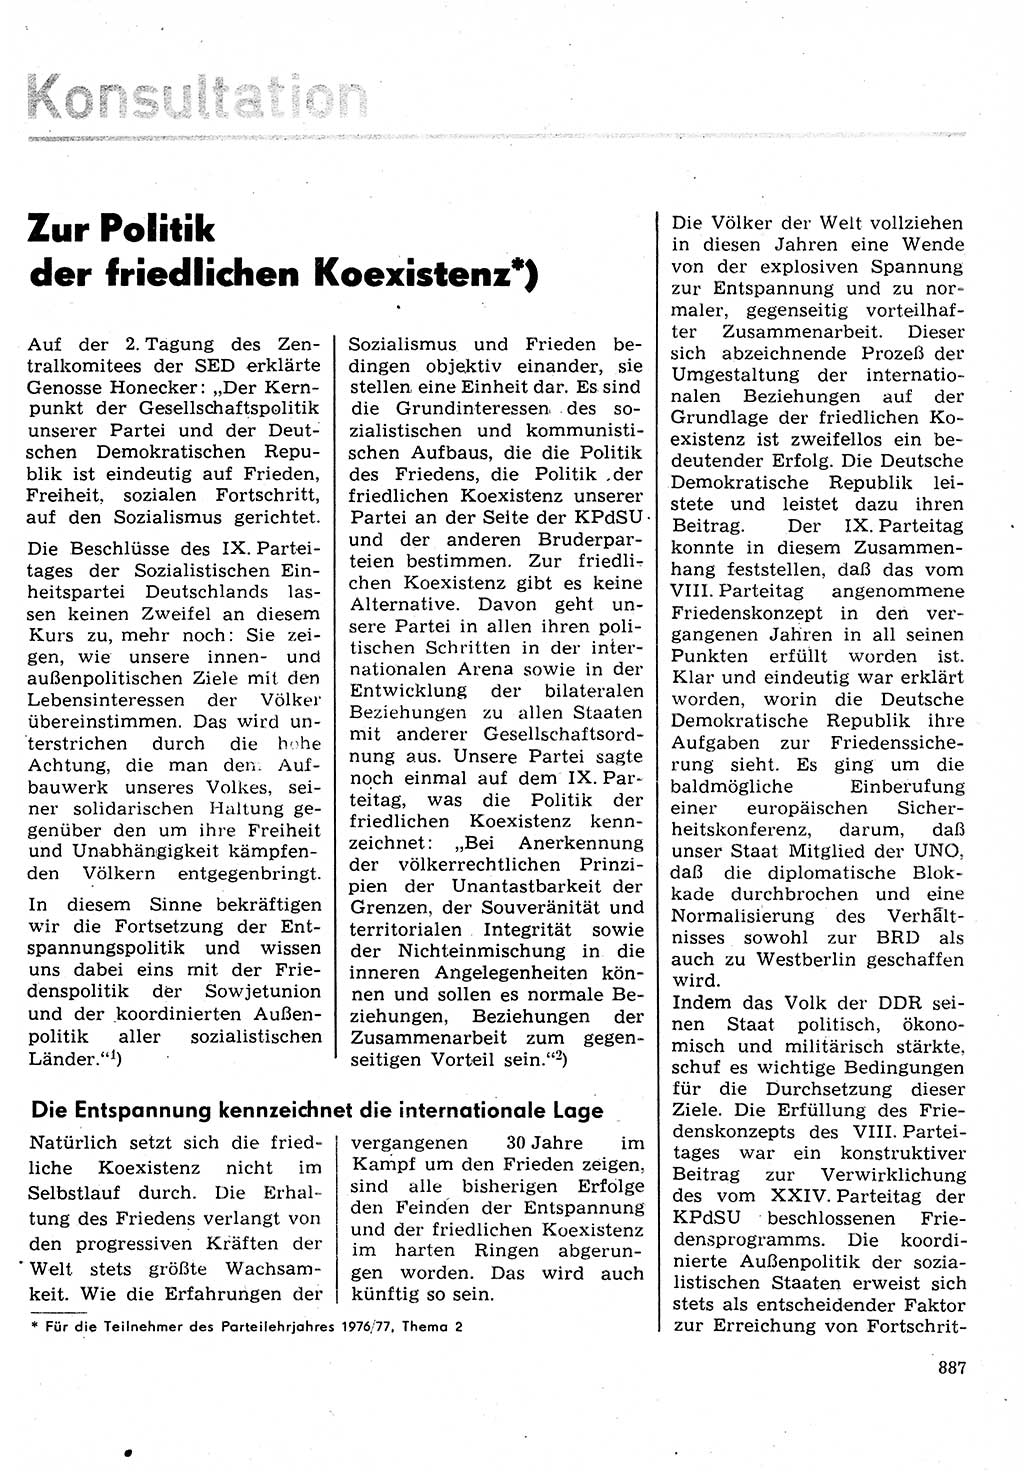 Neuer Weg (NW), Organ des Zentralkomitees (ZK) der SED (Sozialistische Einheitspartei Deutschlands) für Fragen des Parteilebens, 31. Jahrgang [Deutsche Demokratische Republik (DDR)] 1976, Seite 887 (NW ZK SED DDR 1976, S. 887)